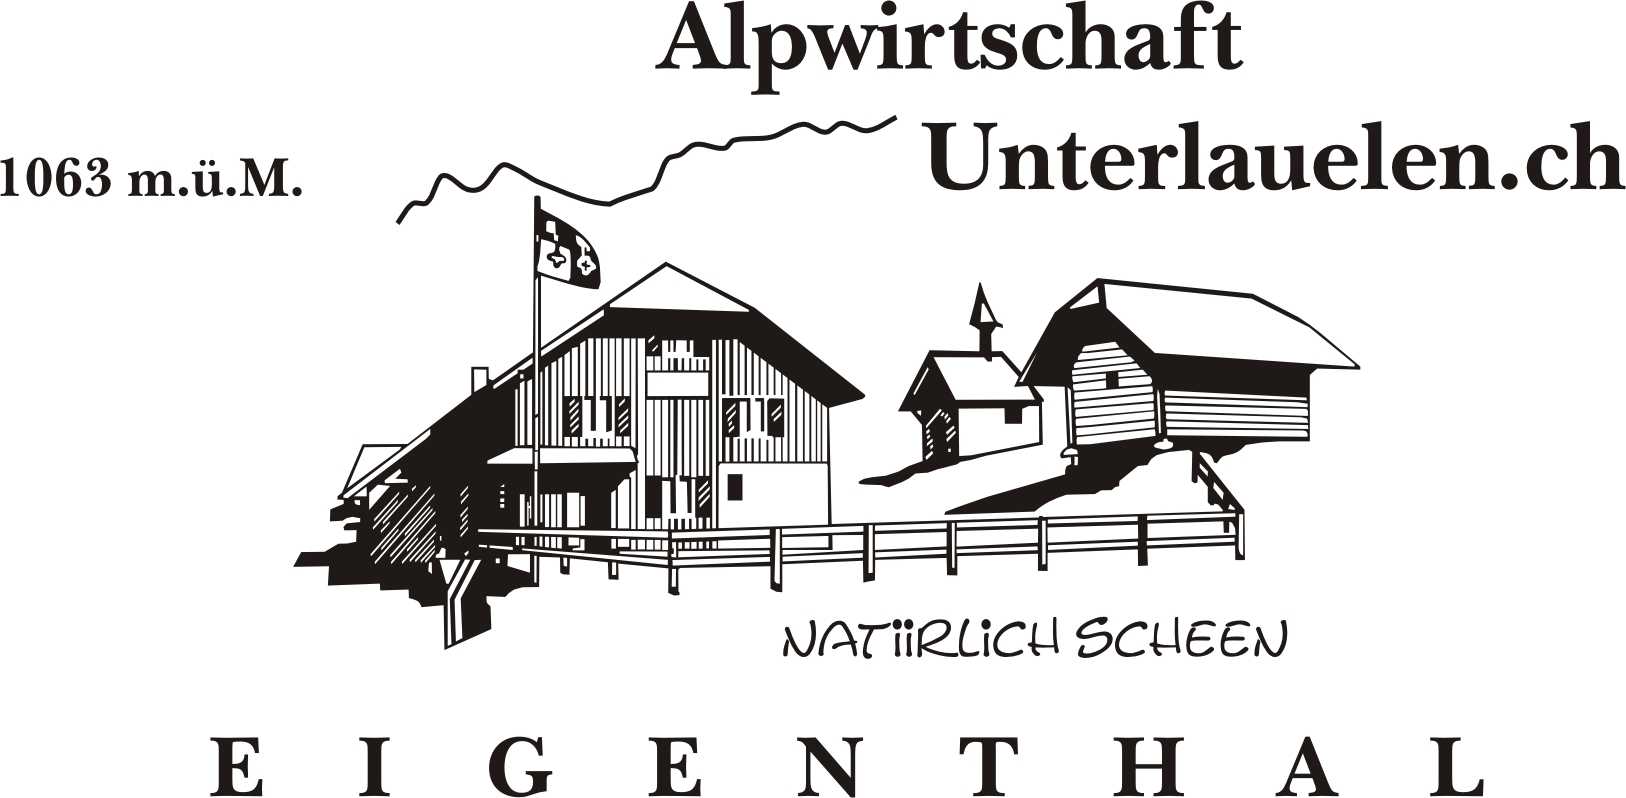 Unterlauelen GmbH Alpwirtschaft